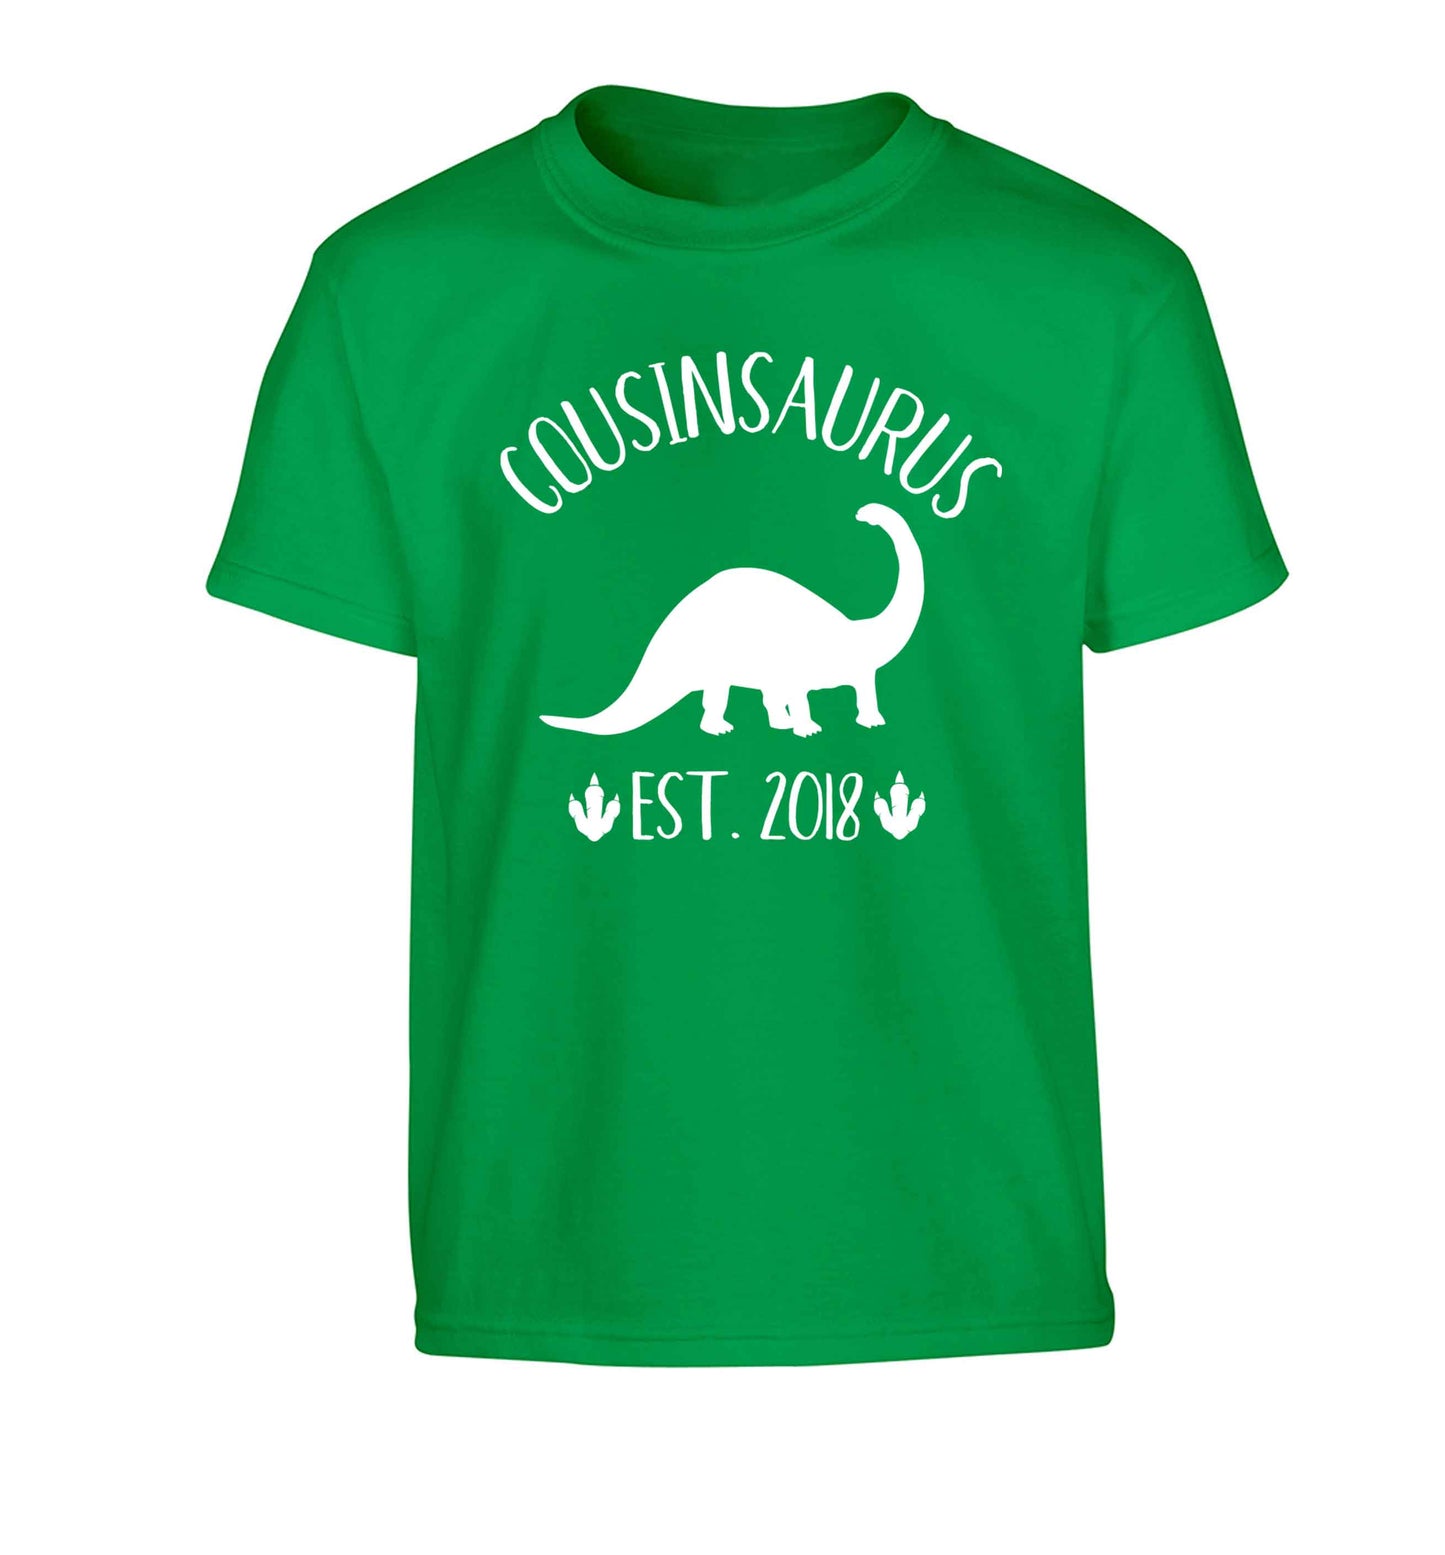 Personalised cousinsaurus since (custom date) Children's green Tshirt 12-13 Years